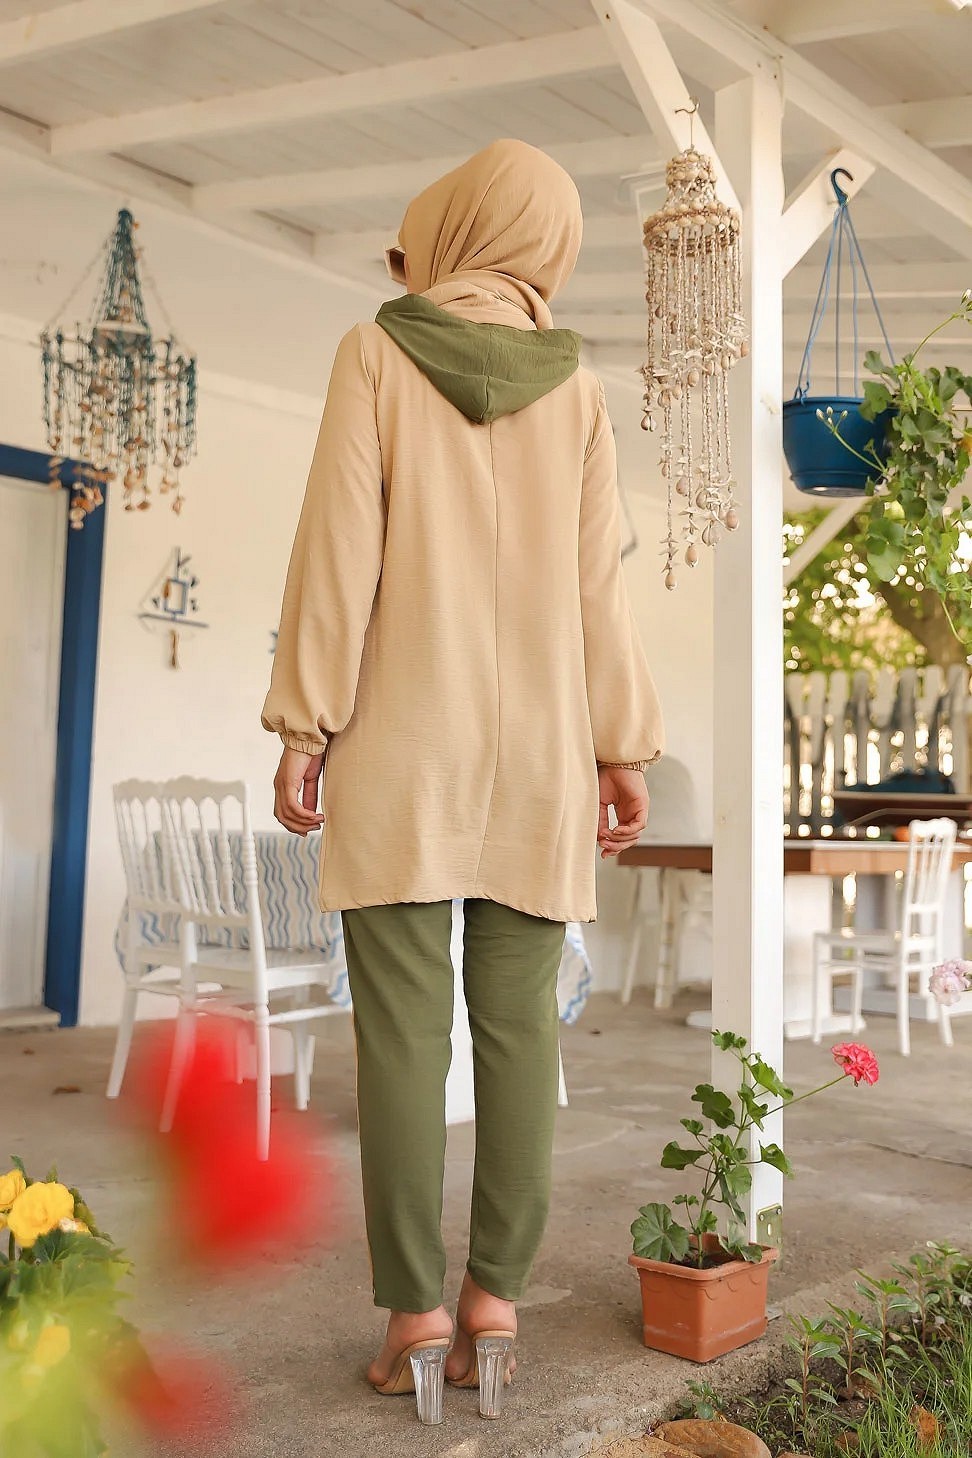 Ensemble casual tunique à capuche et pantalon (Mode Musulmane Femme voilée)  - Couleur beige et kaki - Prêt à porter et accessoires sur